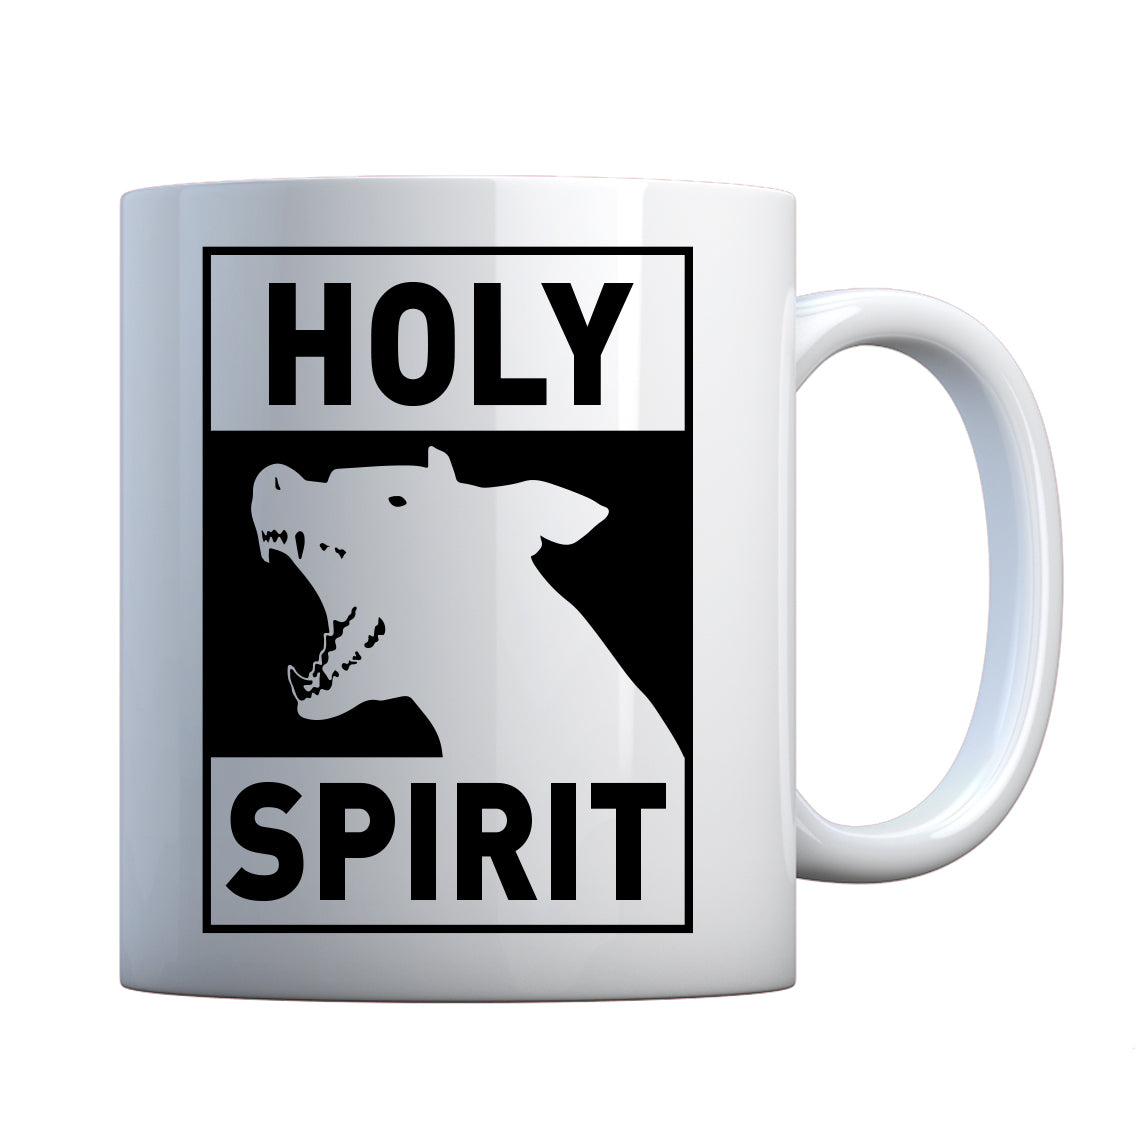 Holy Spirit Ceramic Gift Mug